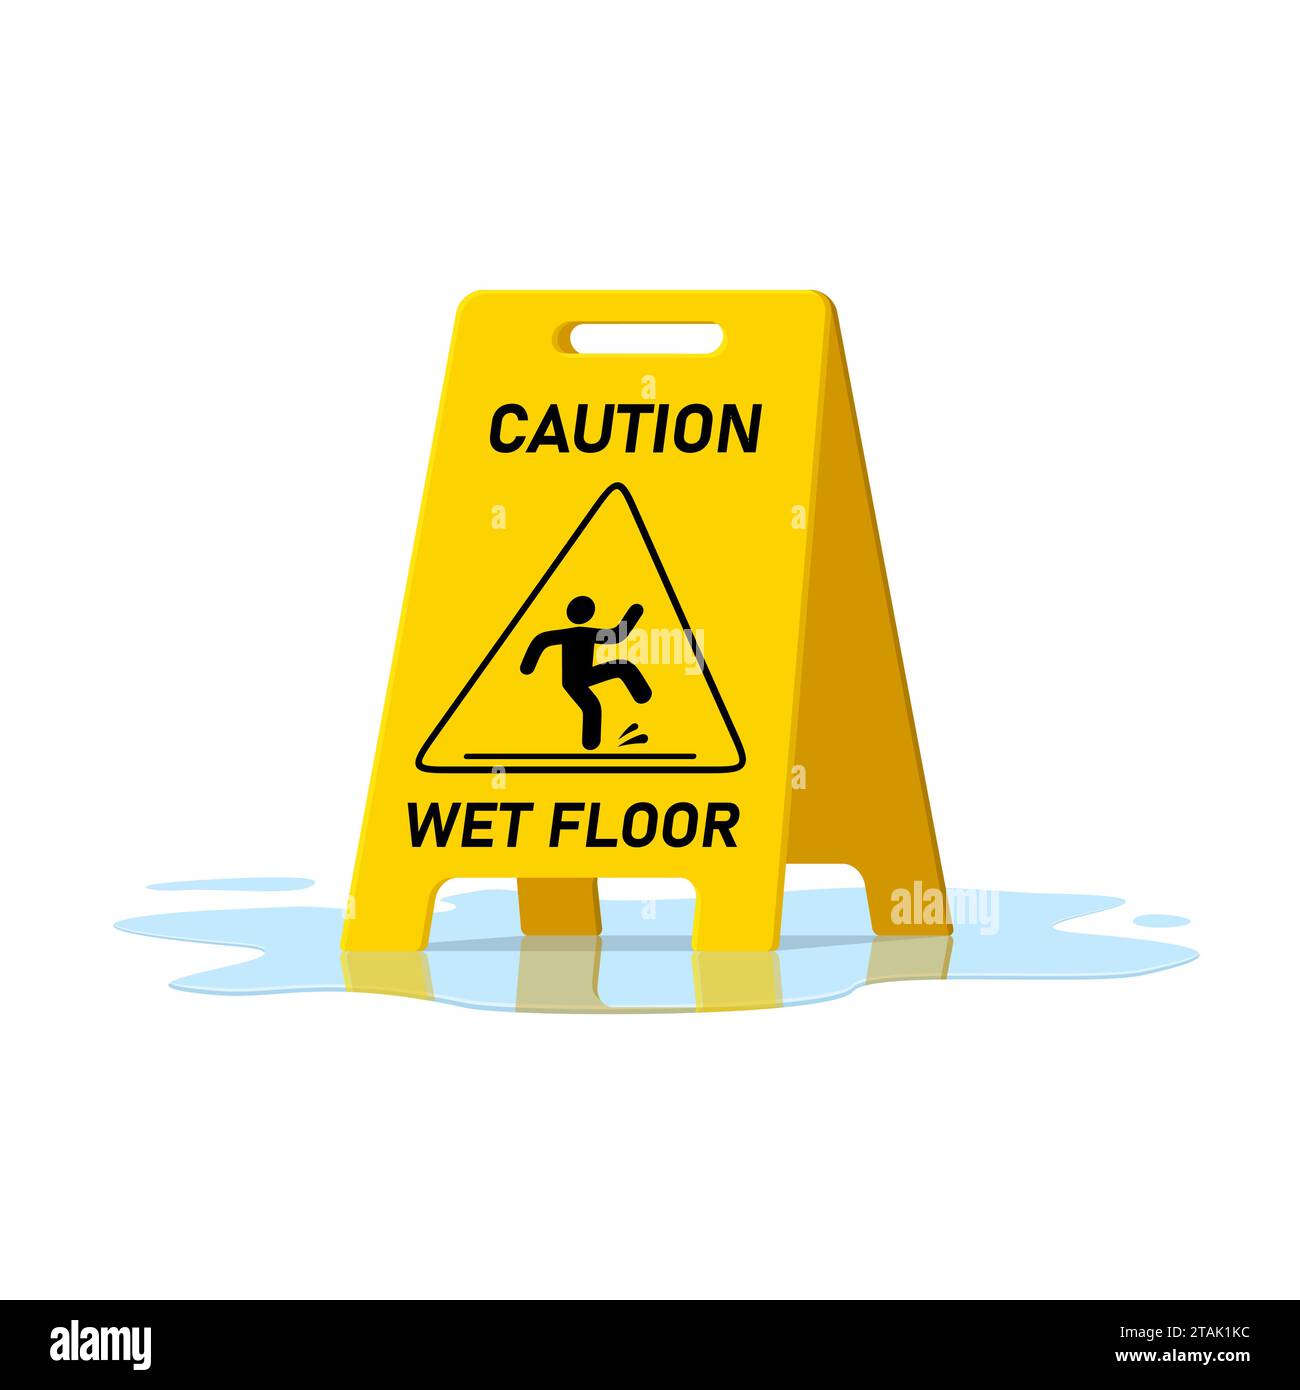 Warnschild für nassen Boden und Wasserpfütze isoliert auf weißem Hintergrund, öffentliche Warnung gelbes Symbol Clipart. Rutschige Oberfläche Vorsicht bei Kunststoffplatten Stock Vektor